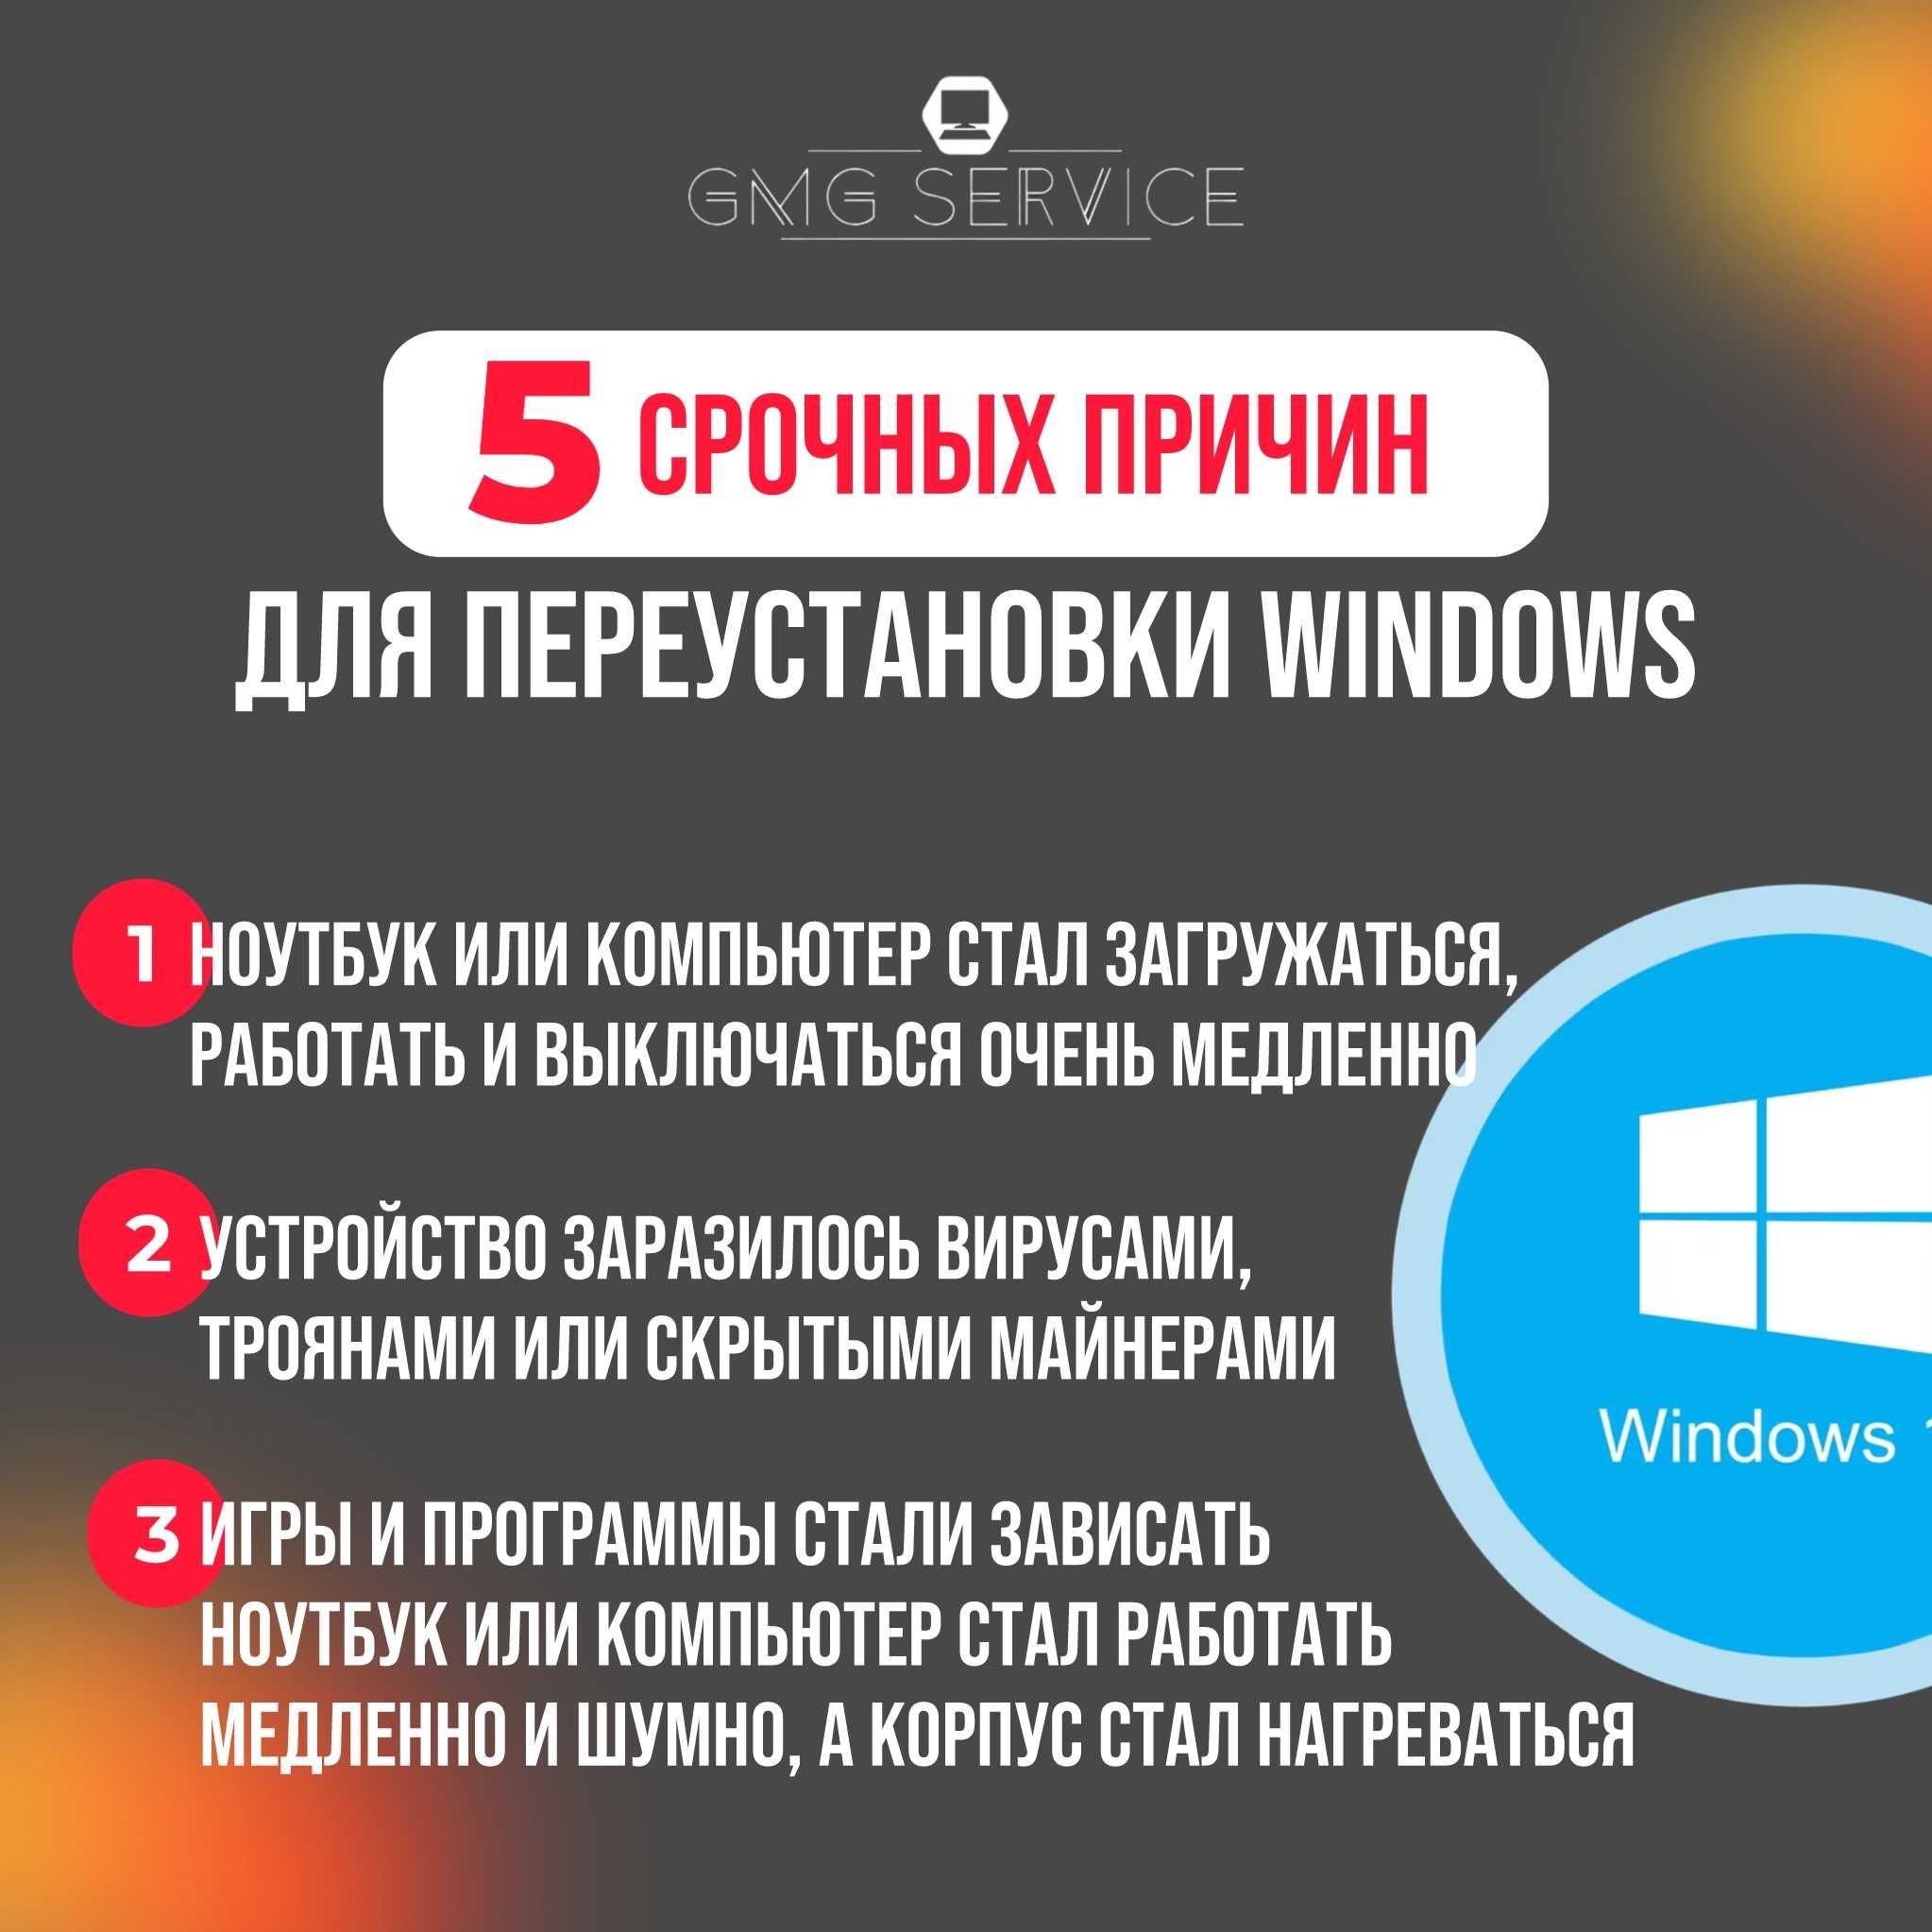 Установка Windows,Виндовс,Ремонт компьютеров,ноутбуков,принтеров.